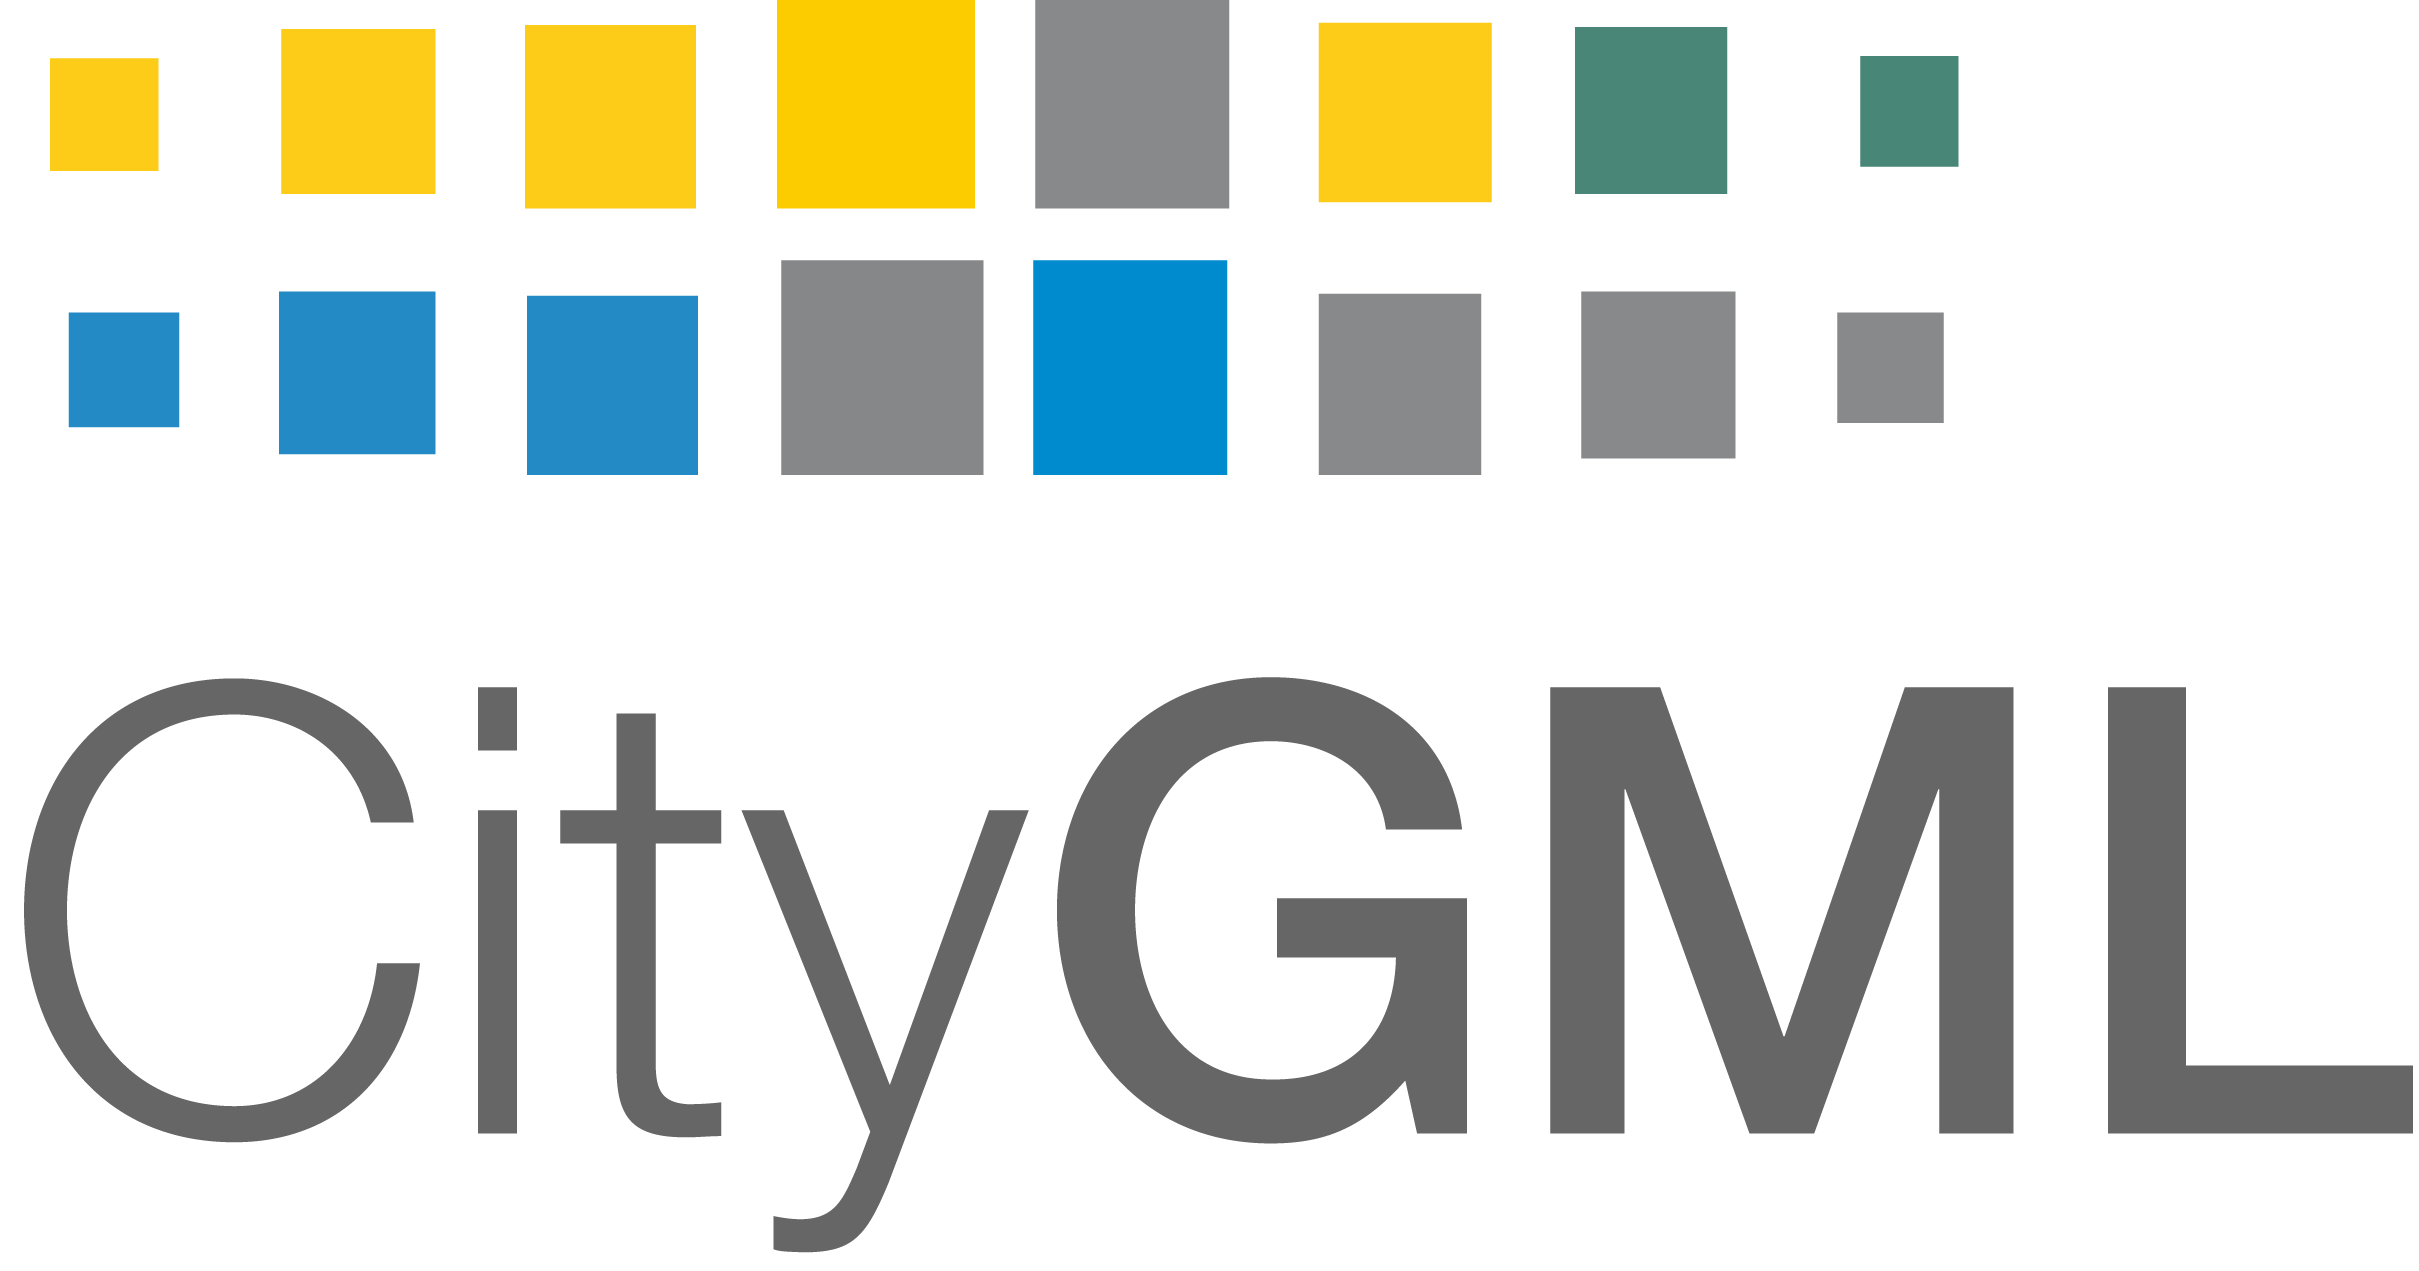 CityGML Veri Modelleme: Şehirlerin Dijital Temsili için Bir Standart